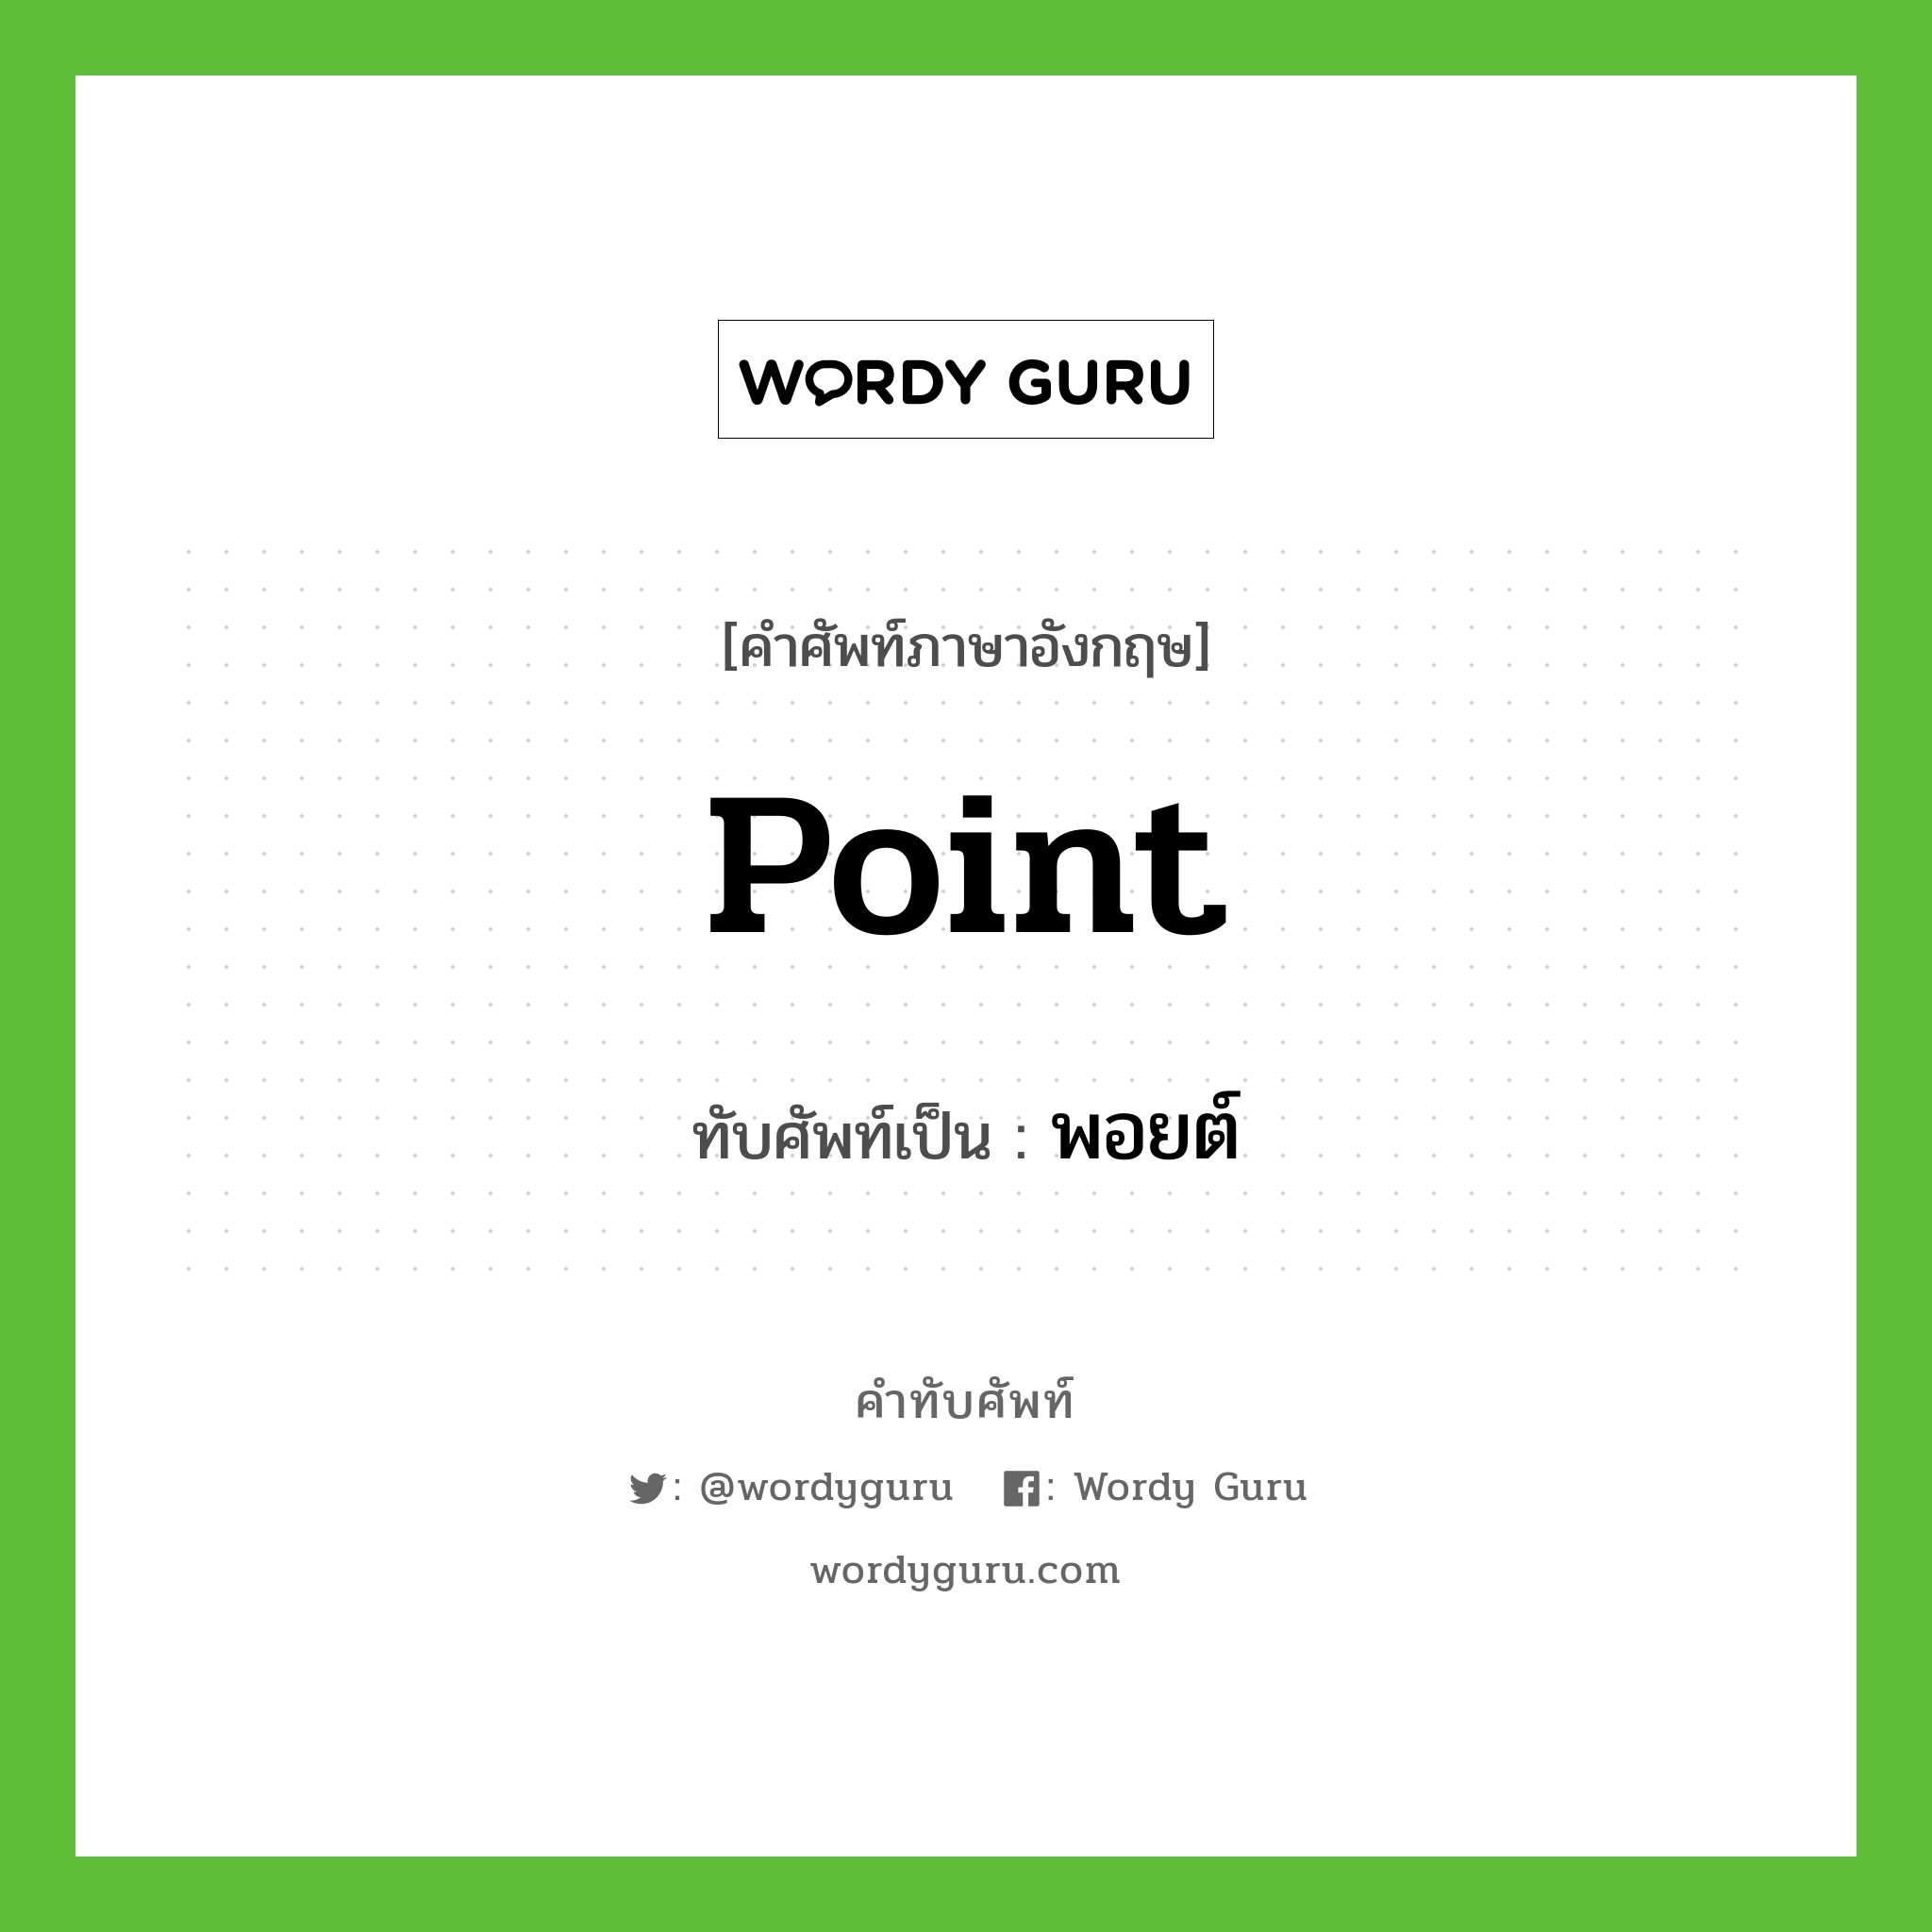 point เขียนเป็นคำไทยว่าอะไร?, คำศัพท์ภาษาอังกฤษ point ทับศัพท์เป็น พอยต์